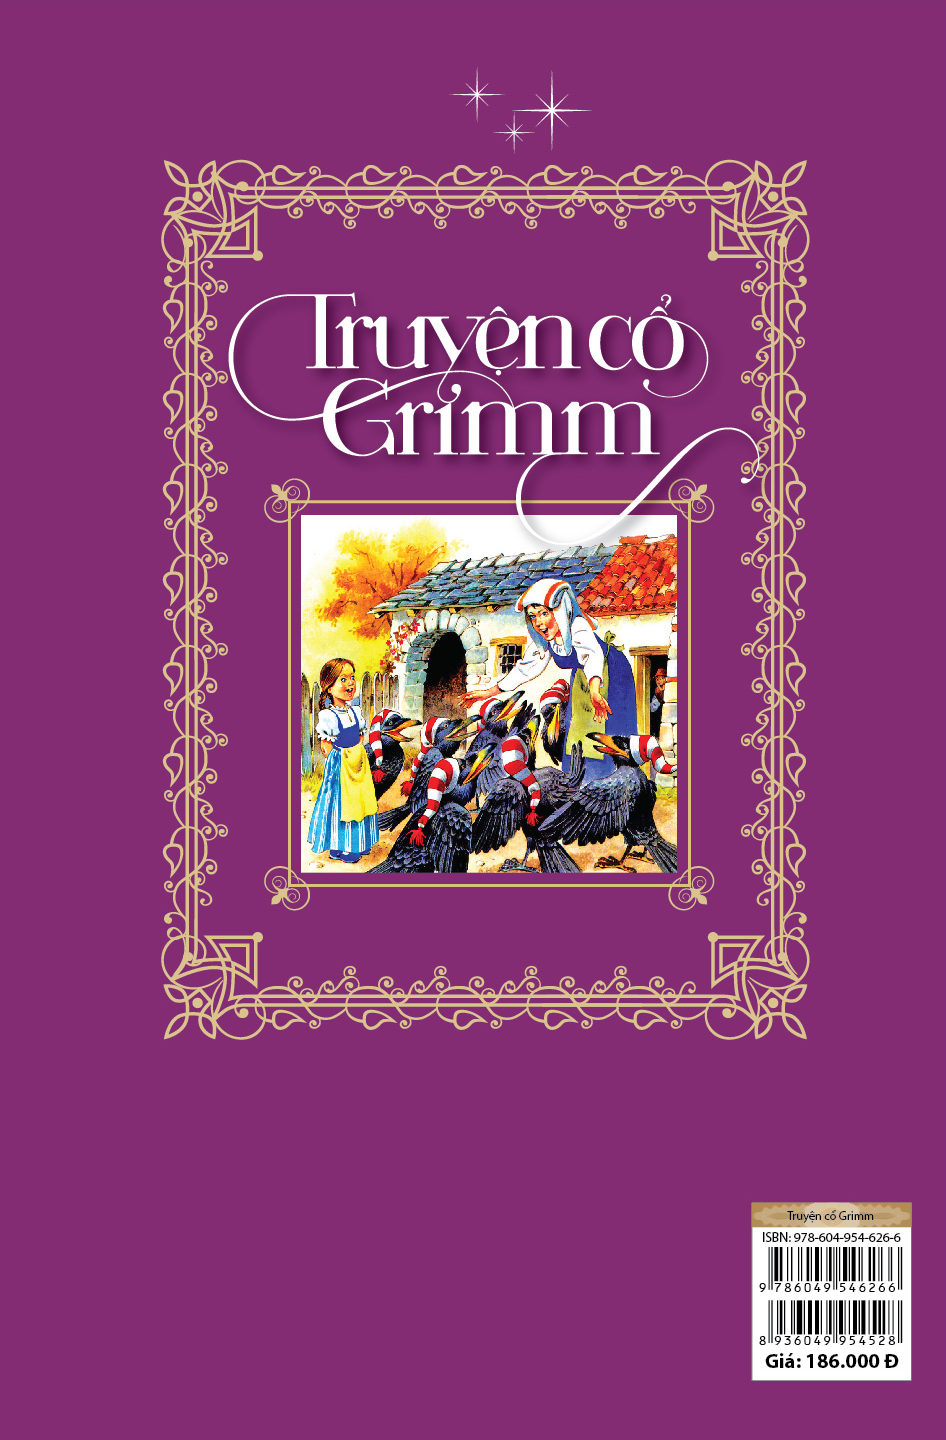 Truyện cổ Grimm